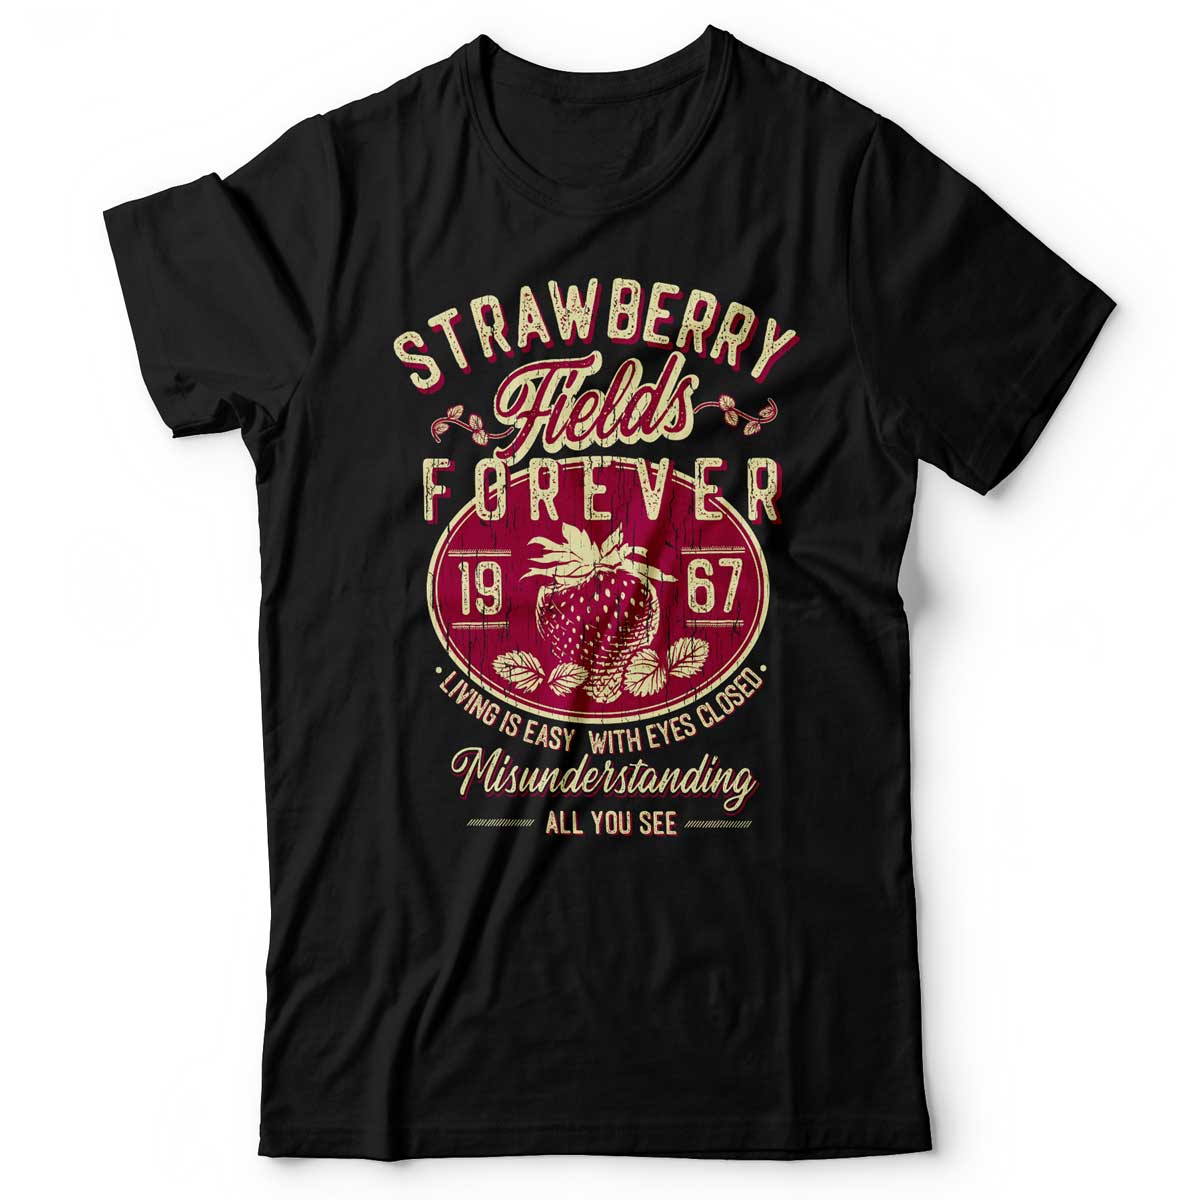 The Beatles - Strawberry Fields Forever - Men's T-Shirt Black